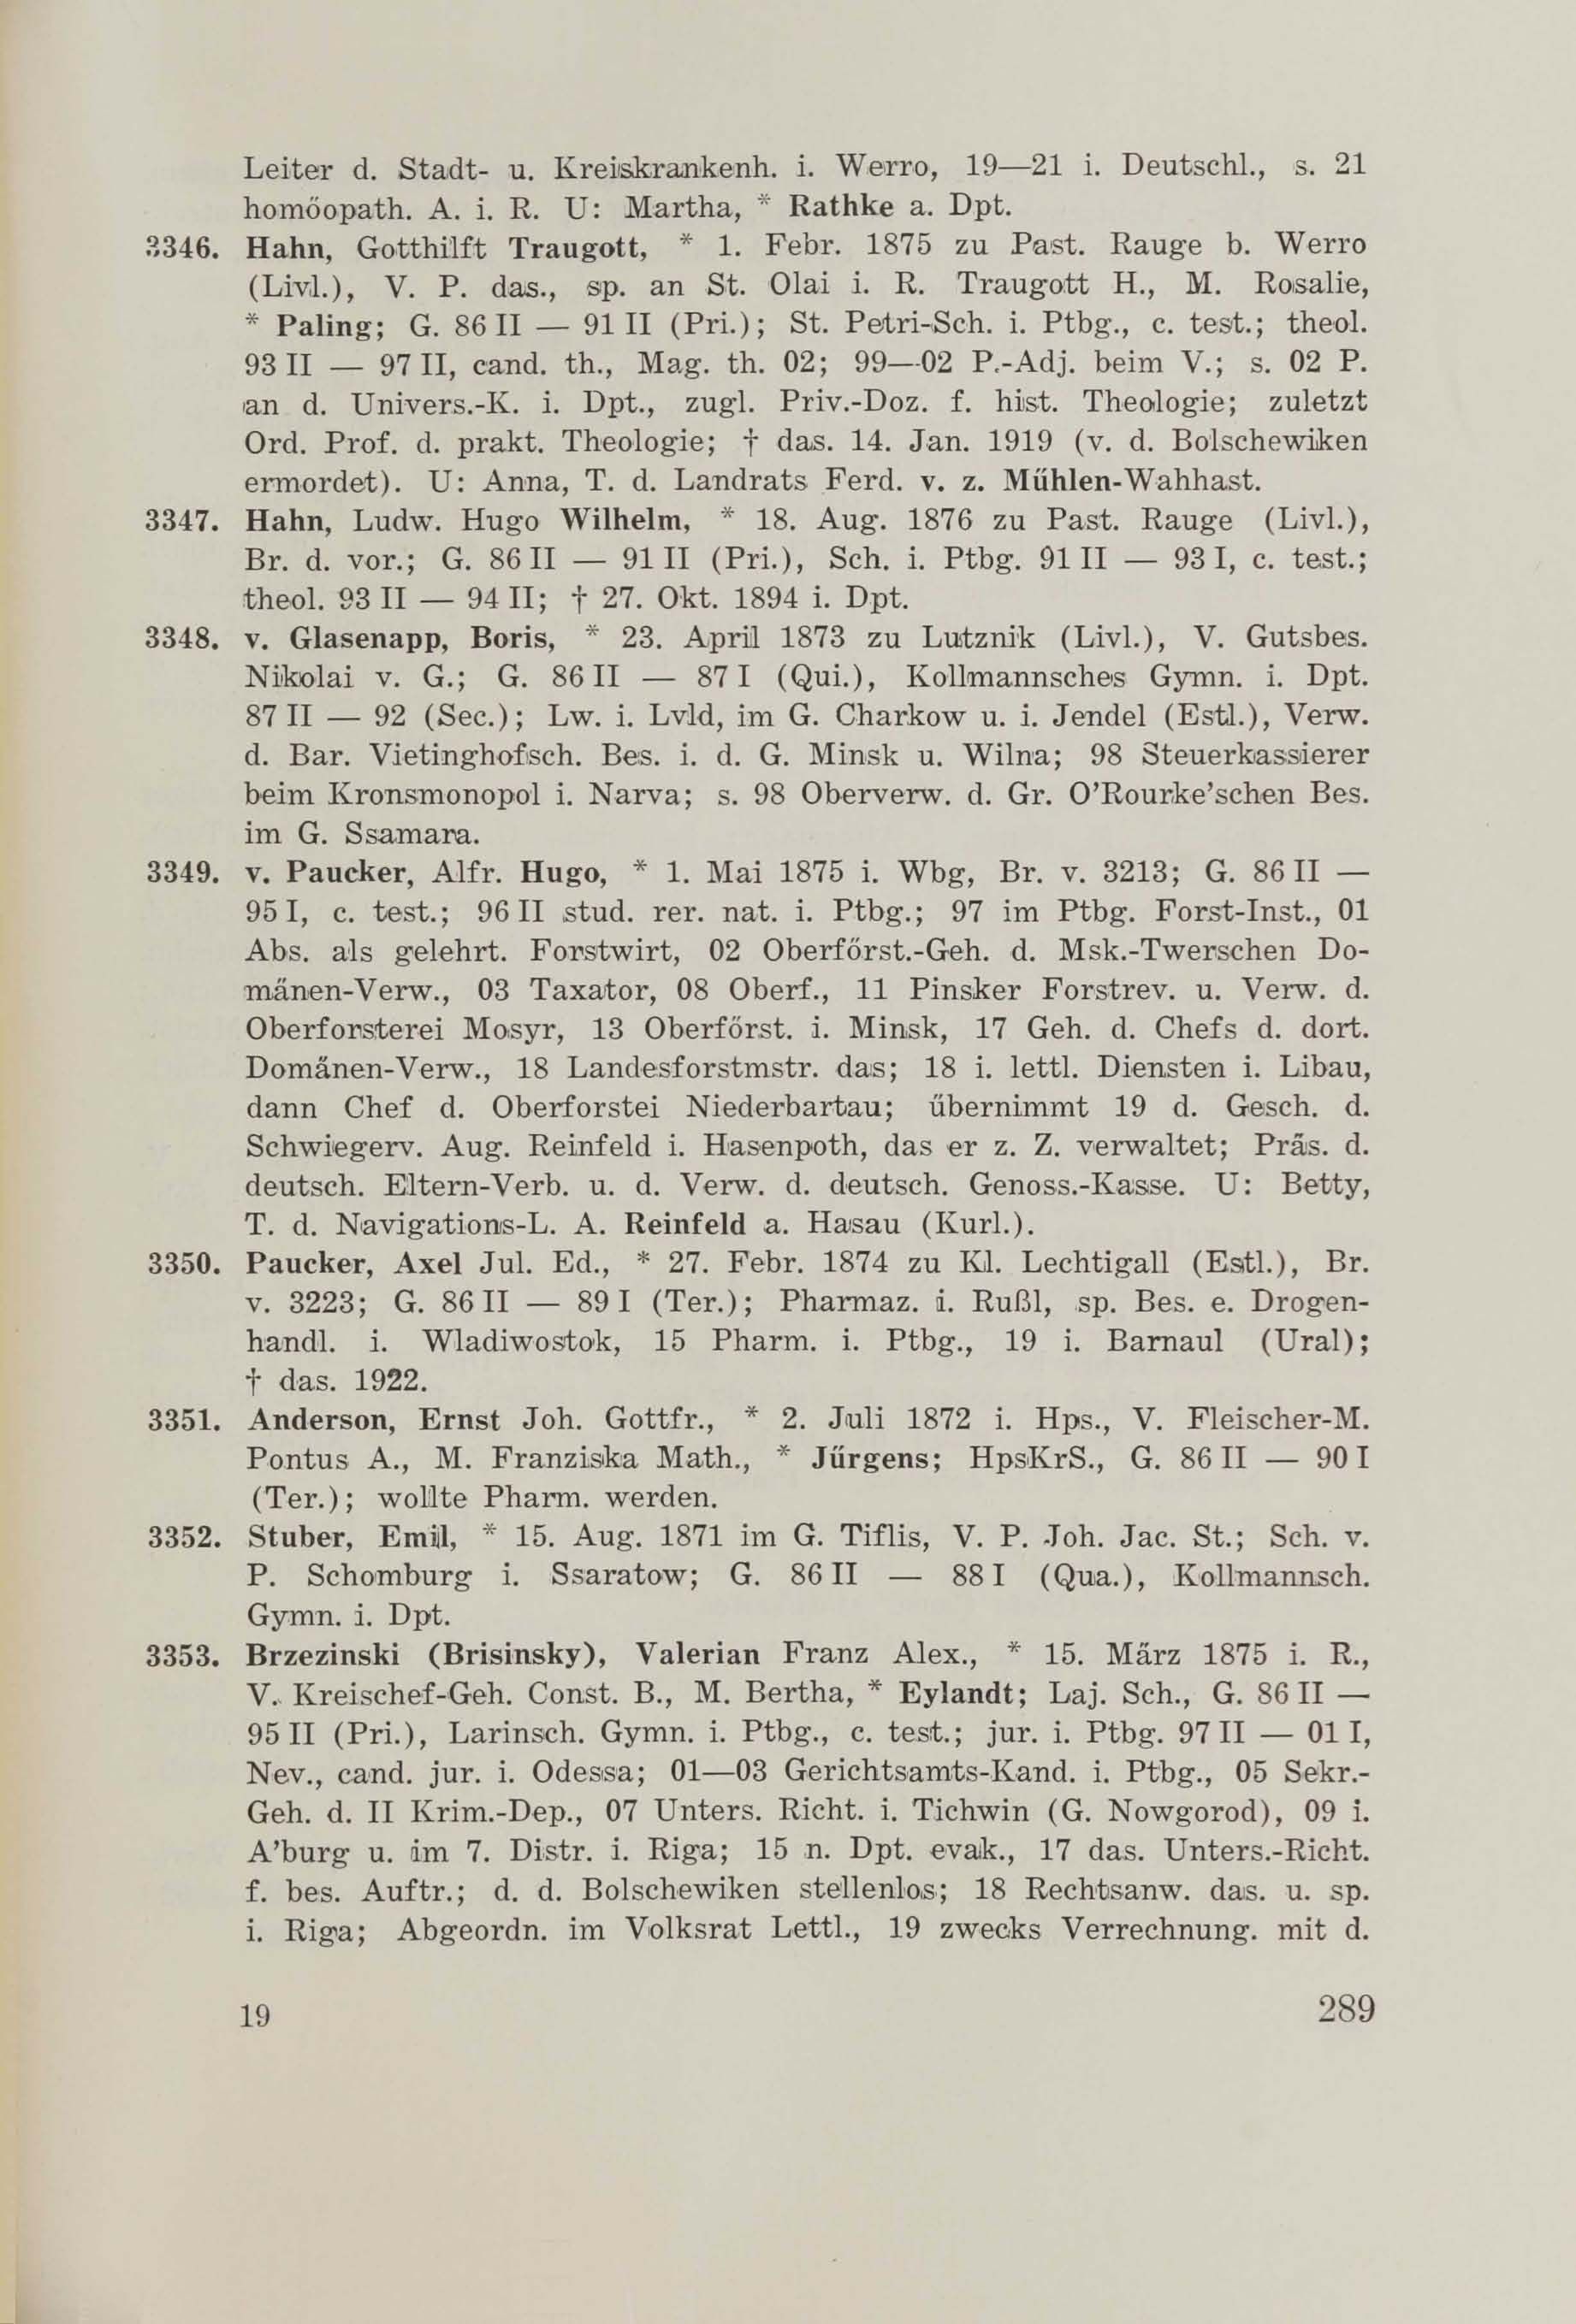 Schüler-Verzeichnis des Revalschen Gouvernements-Gymnasiums 1805–1890 (1931) | 299. (289) Main body of text